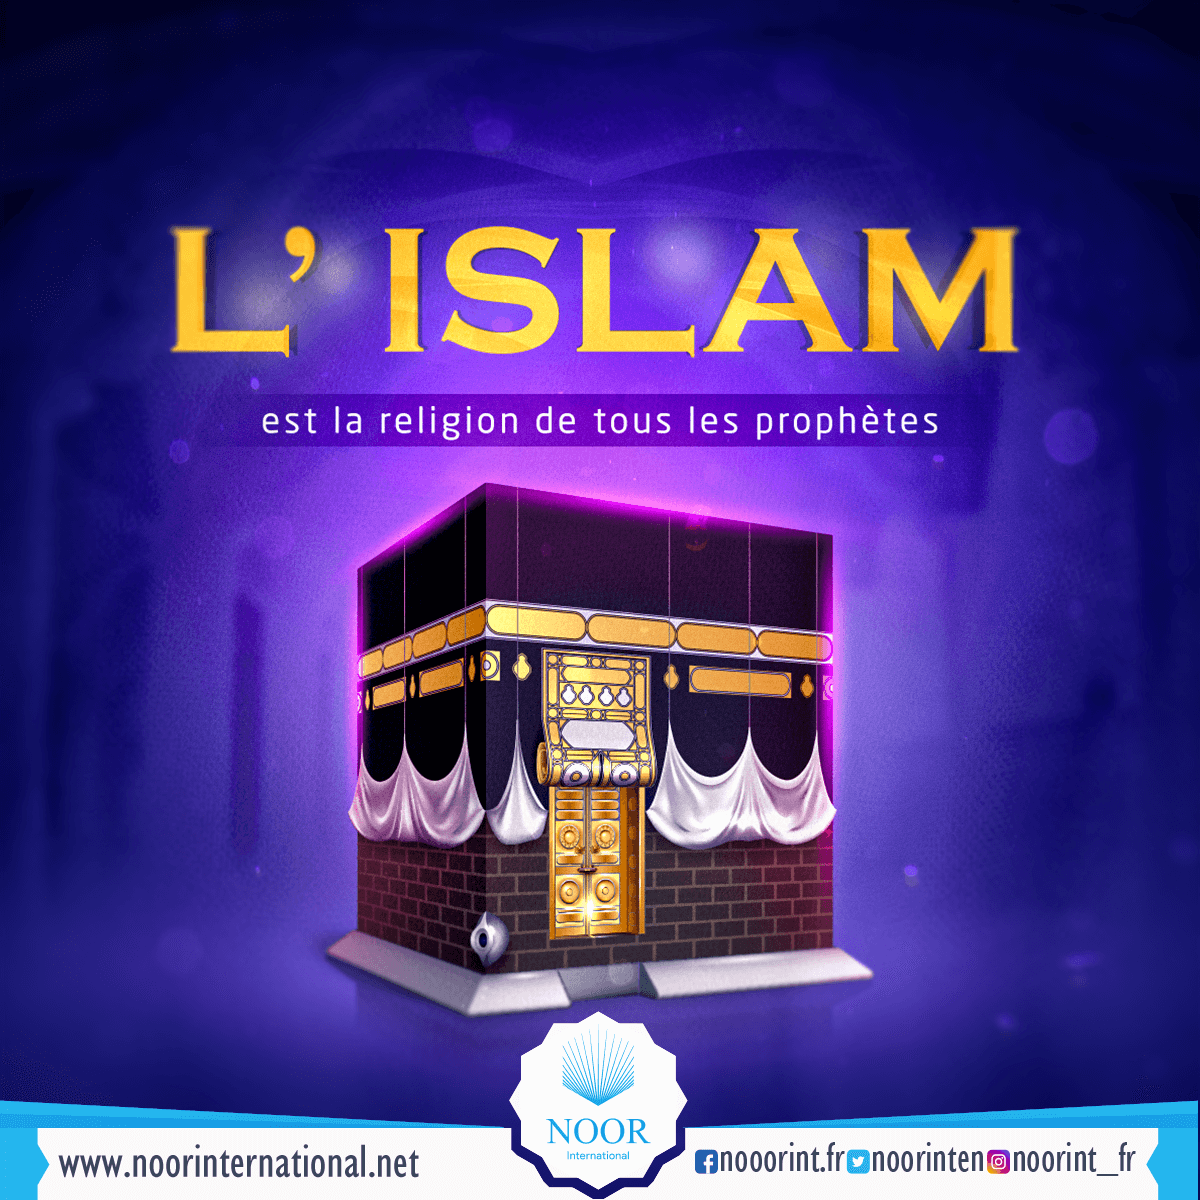 L’ Islam est la religion de tous les prophètes